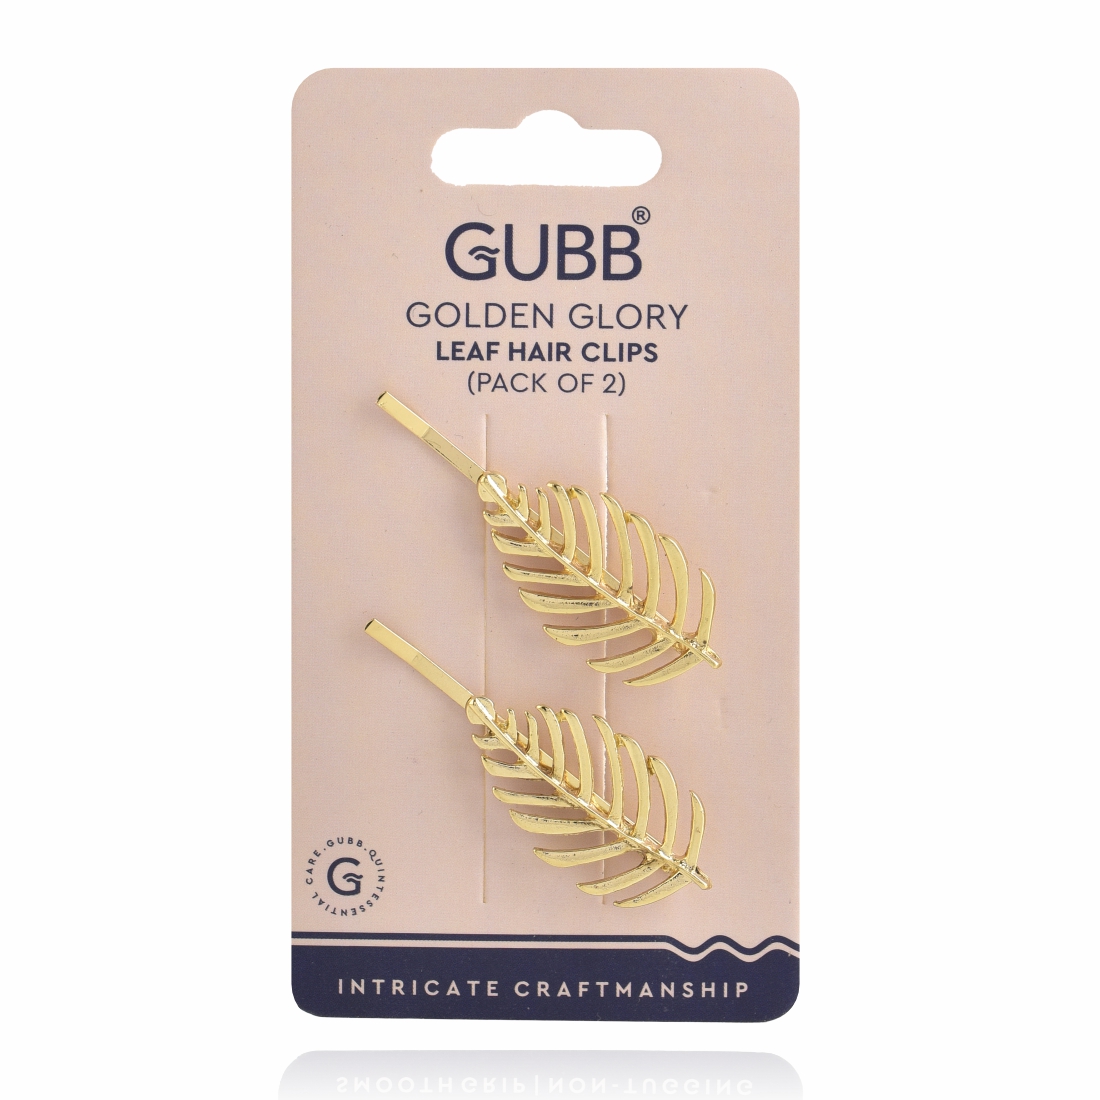 GOLDEN GLORY LEAF HAIR CLIPS